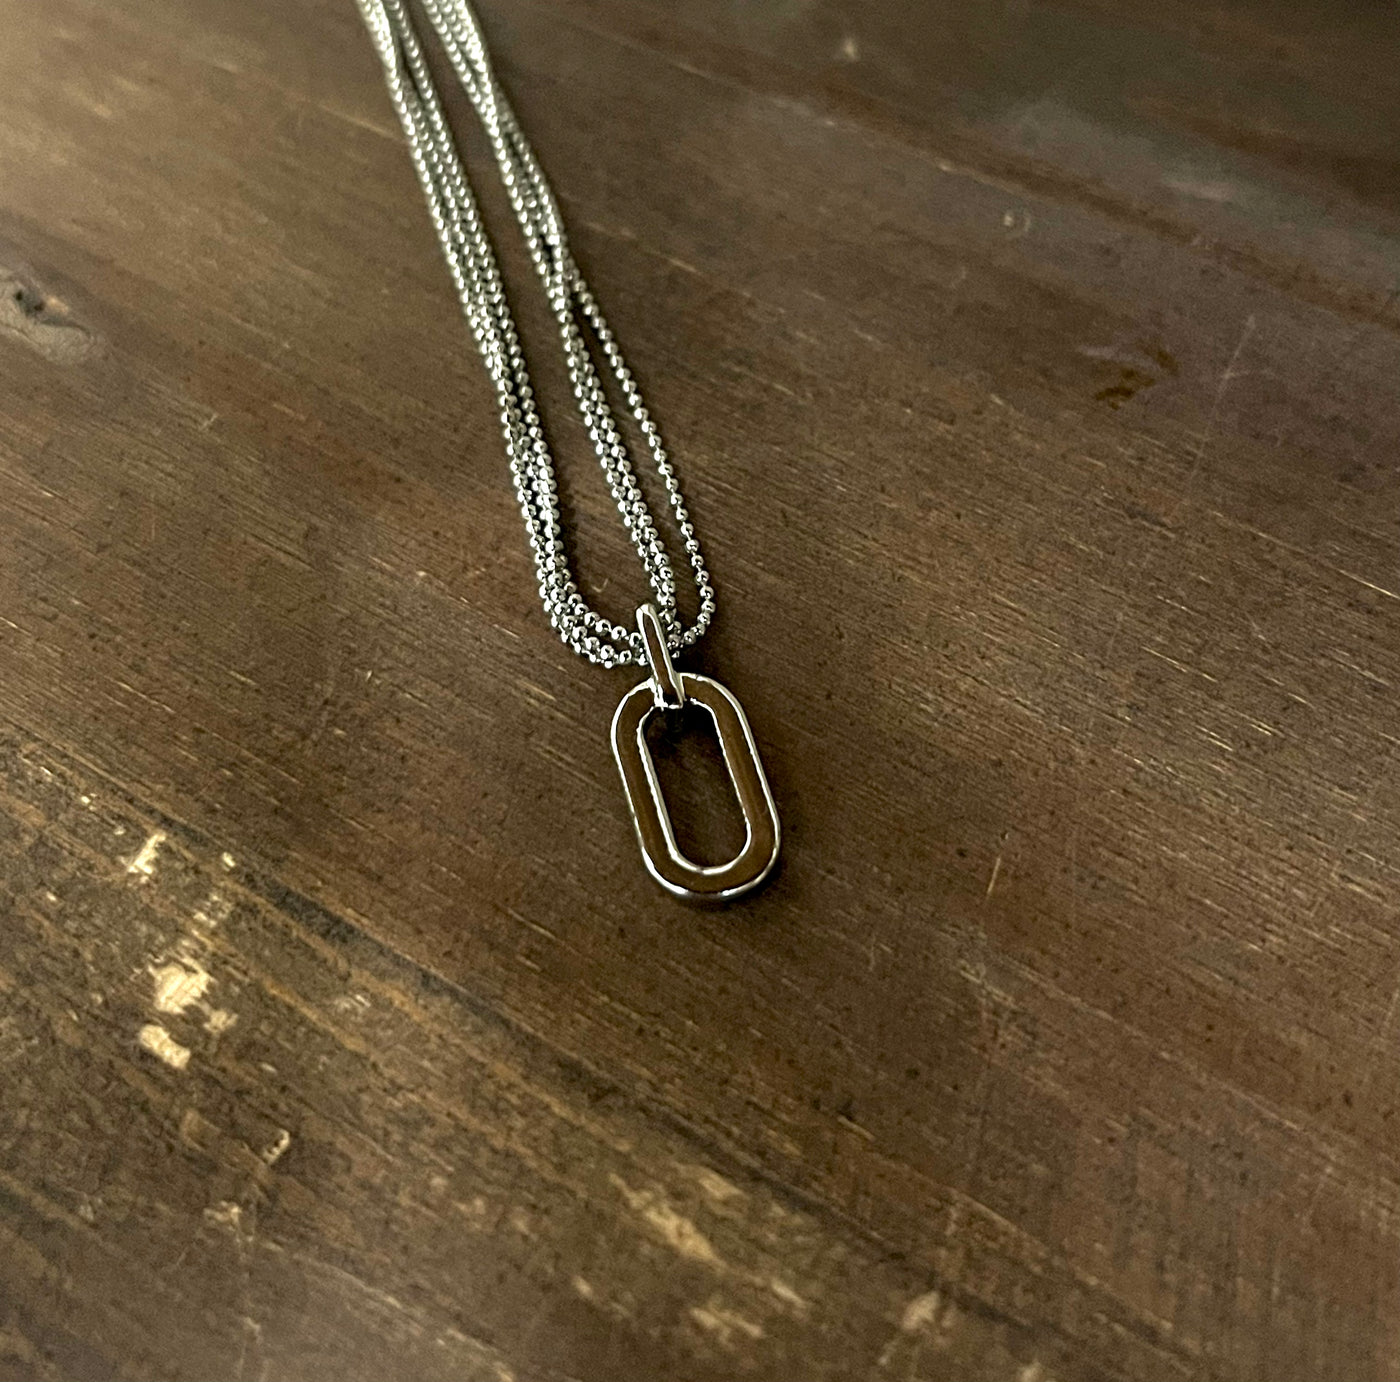 Tri-Strand Pendant Necklace in Silver - Madison's Niche 